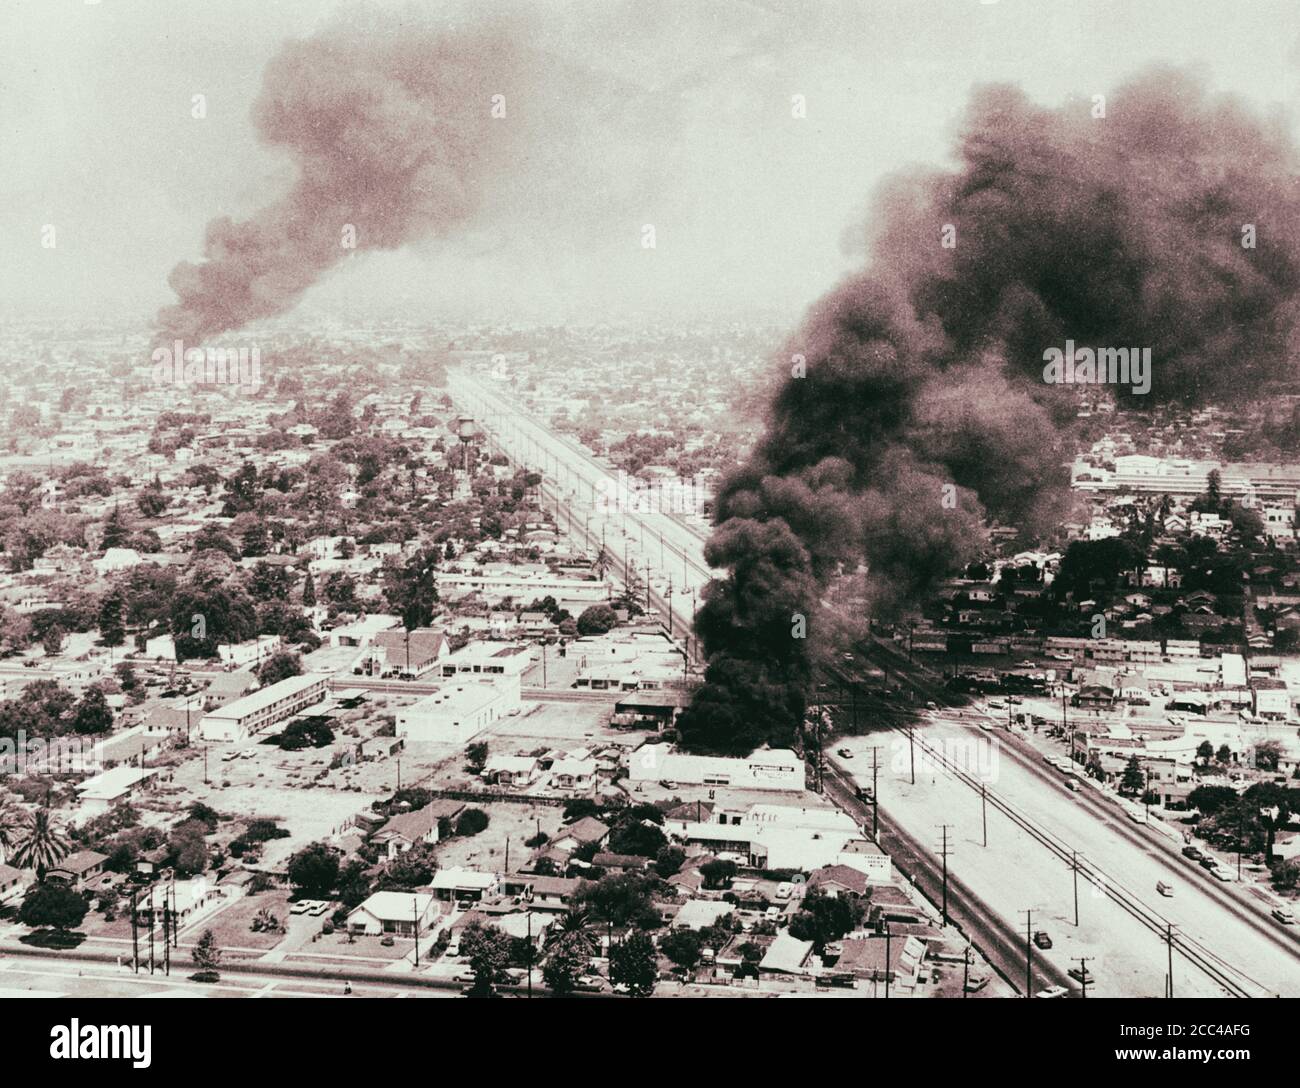 Die Watts-Unruhen, manchmal auch als die Watts Rebellion bezeichnet, fanden im Watts-Viertel und seinen umliegenden Gebieten von Los Angeles aus Augu statt Stockfoto